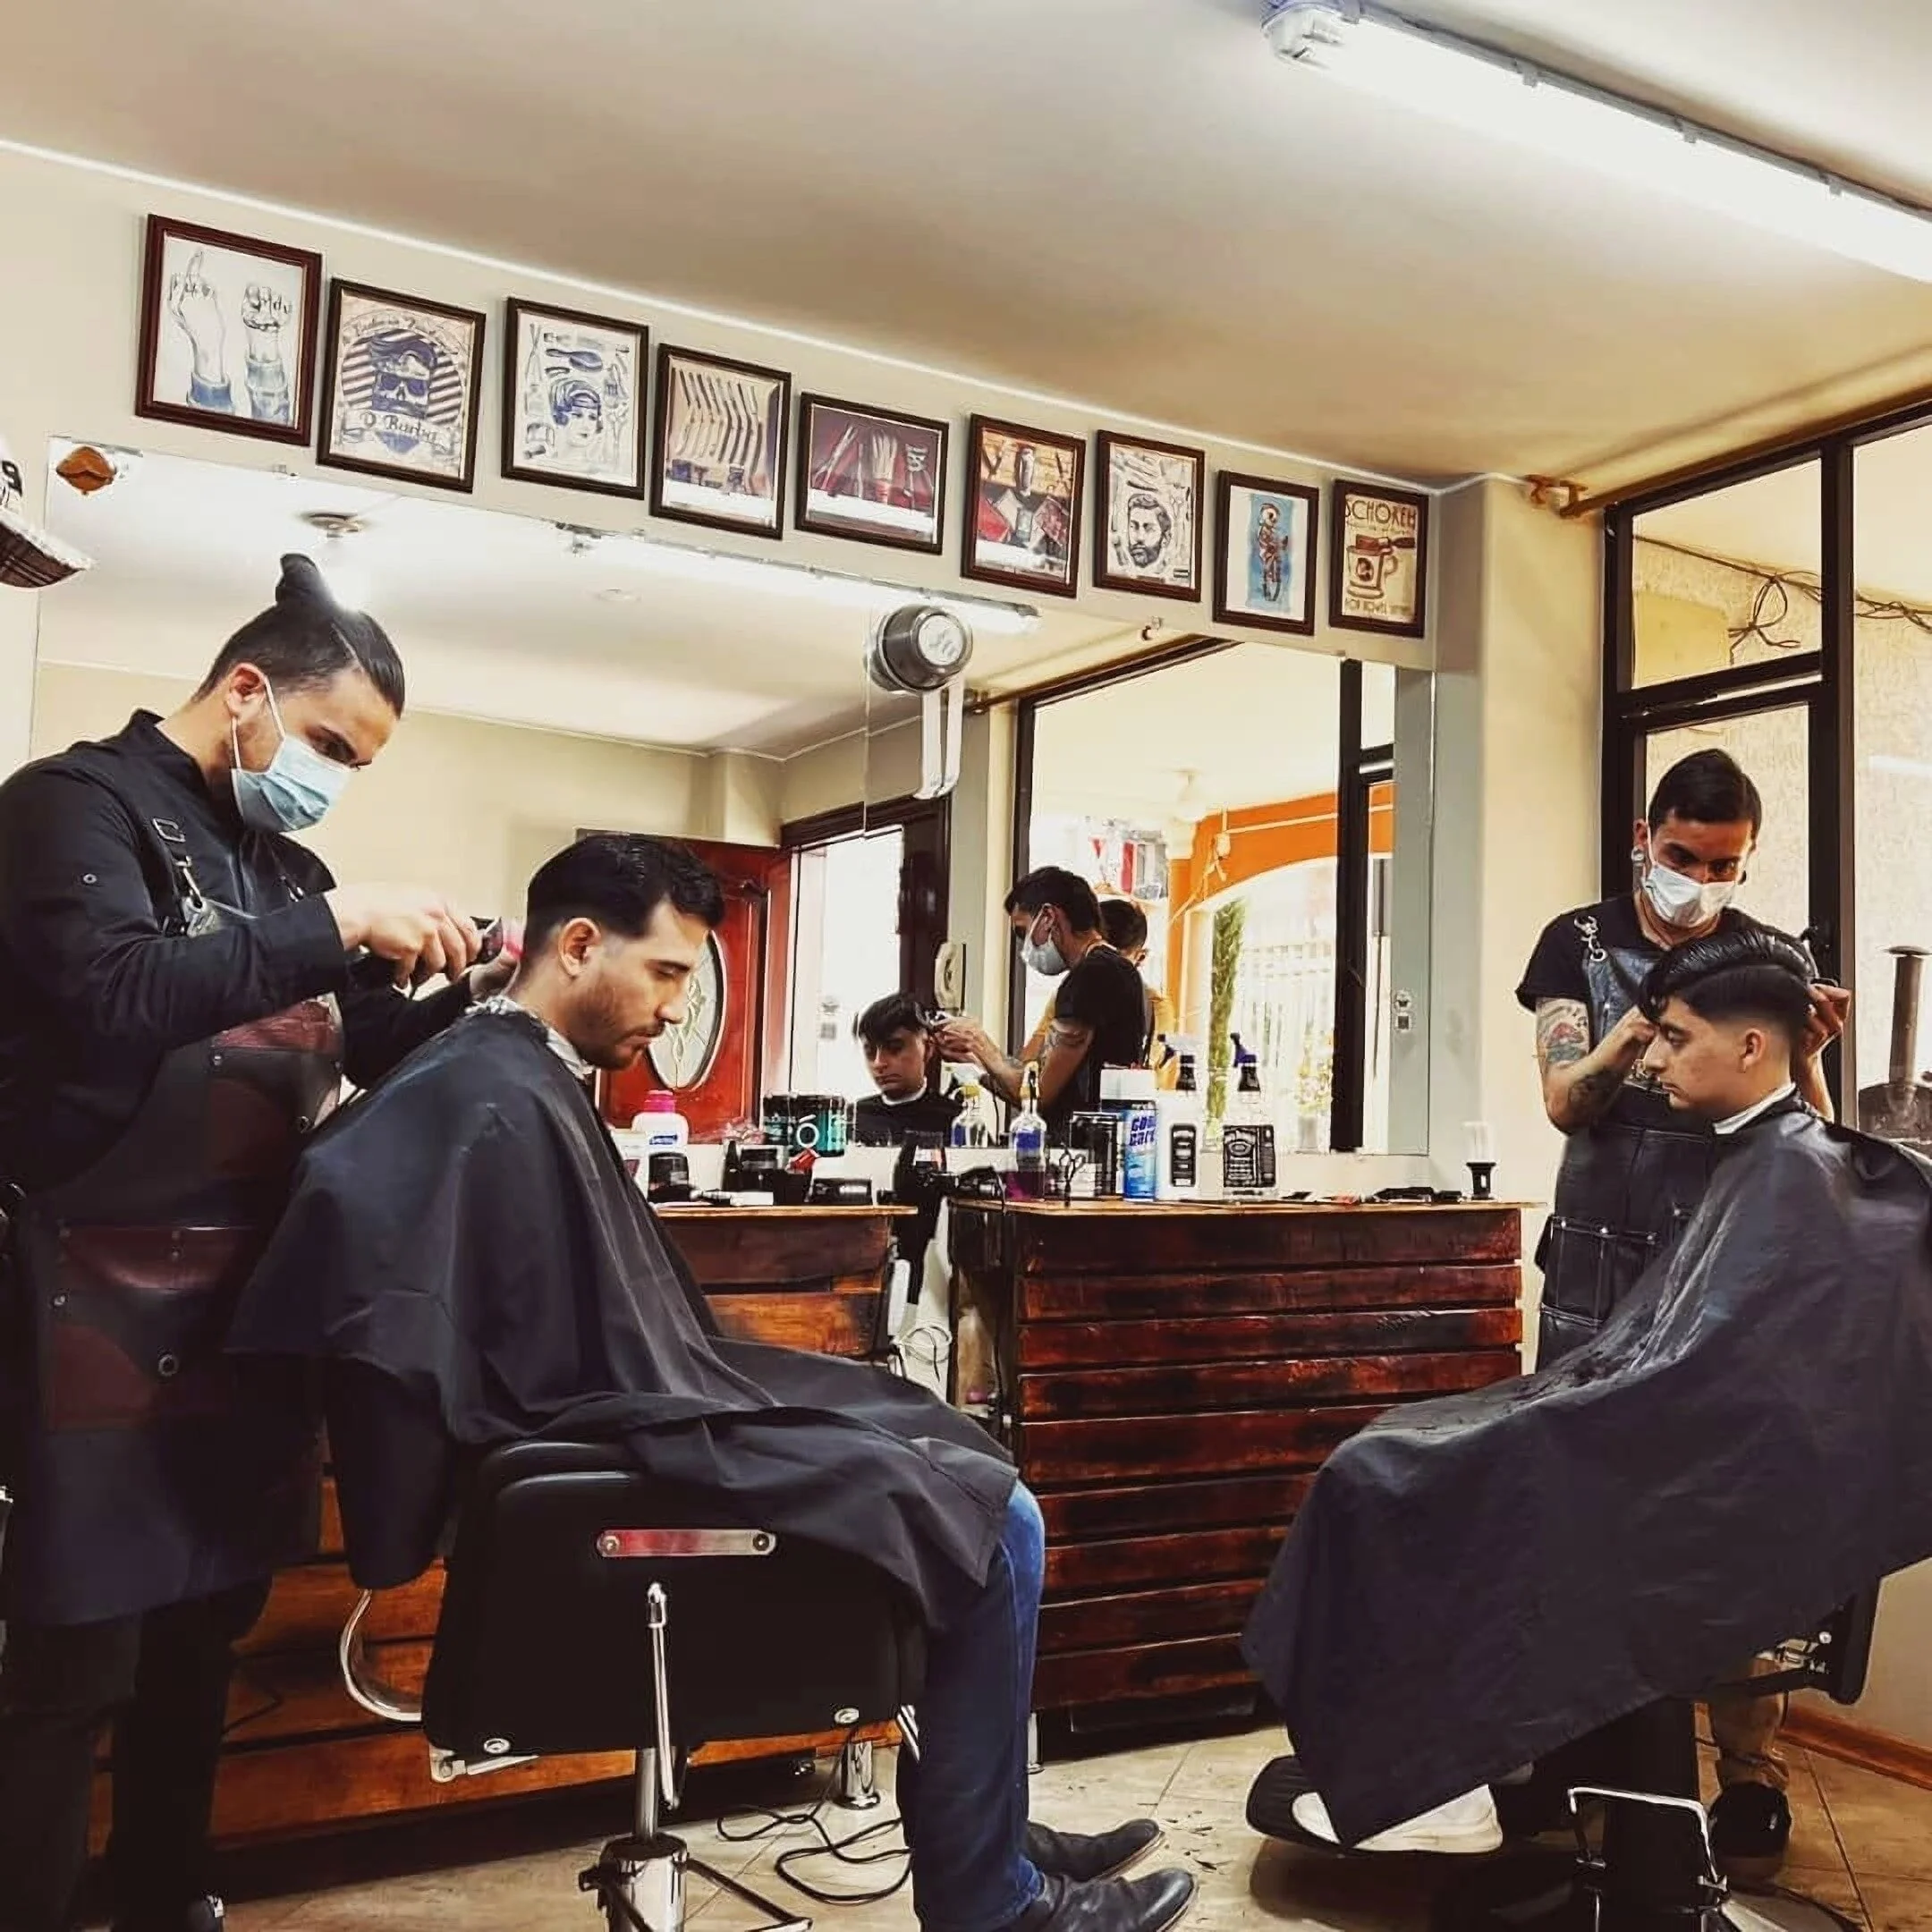 Barbería-moustache-barber-shop-ecuador-8990